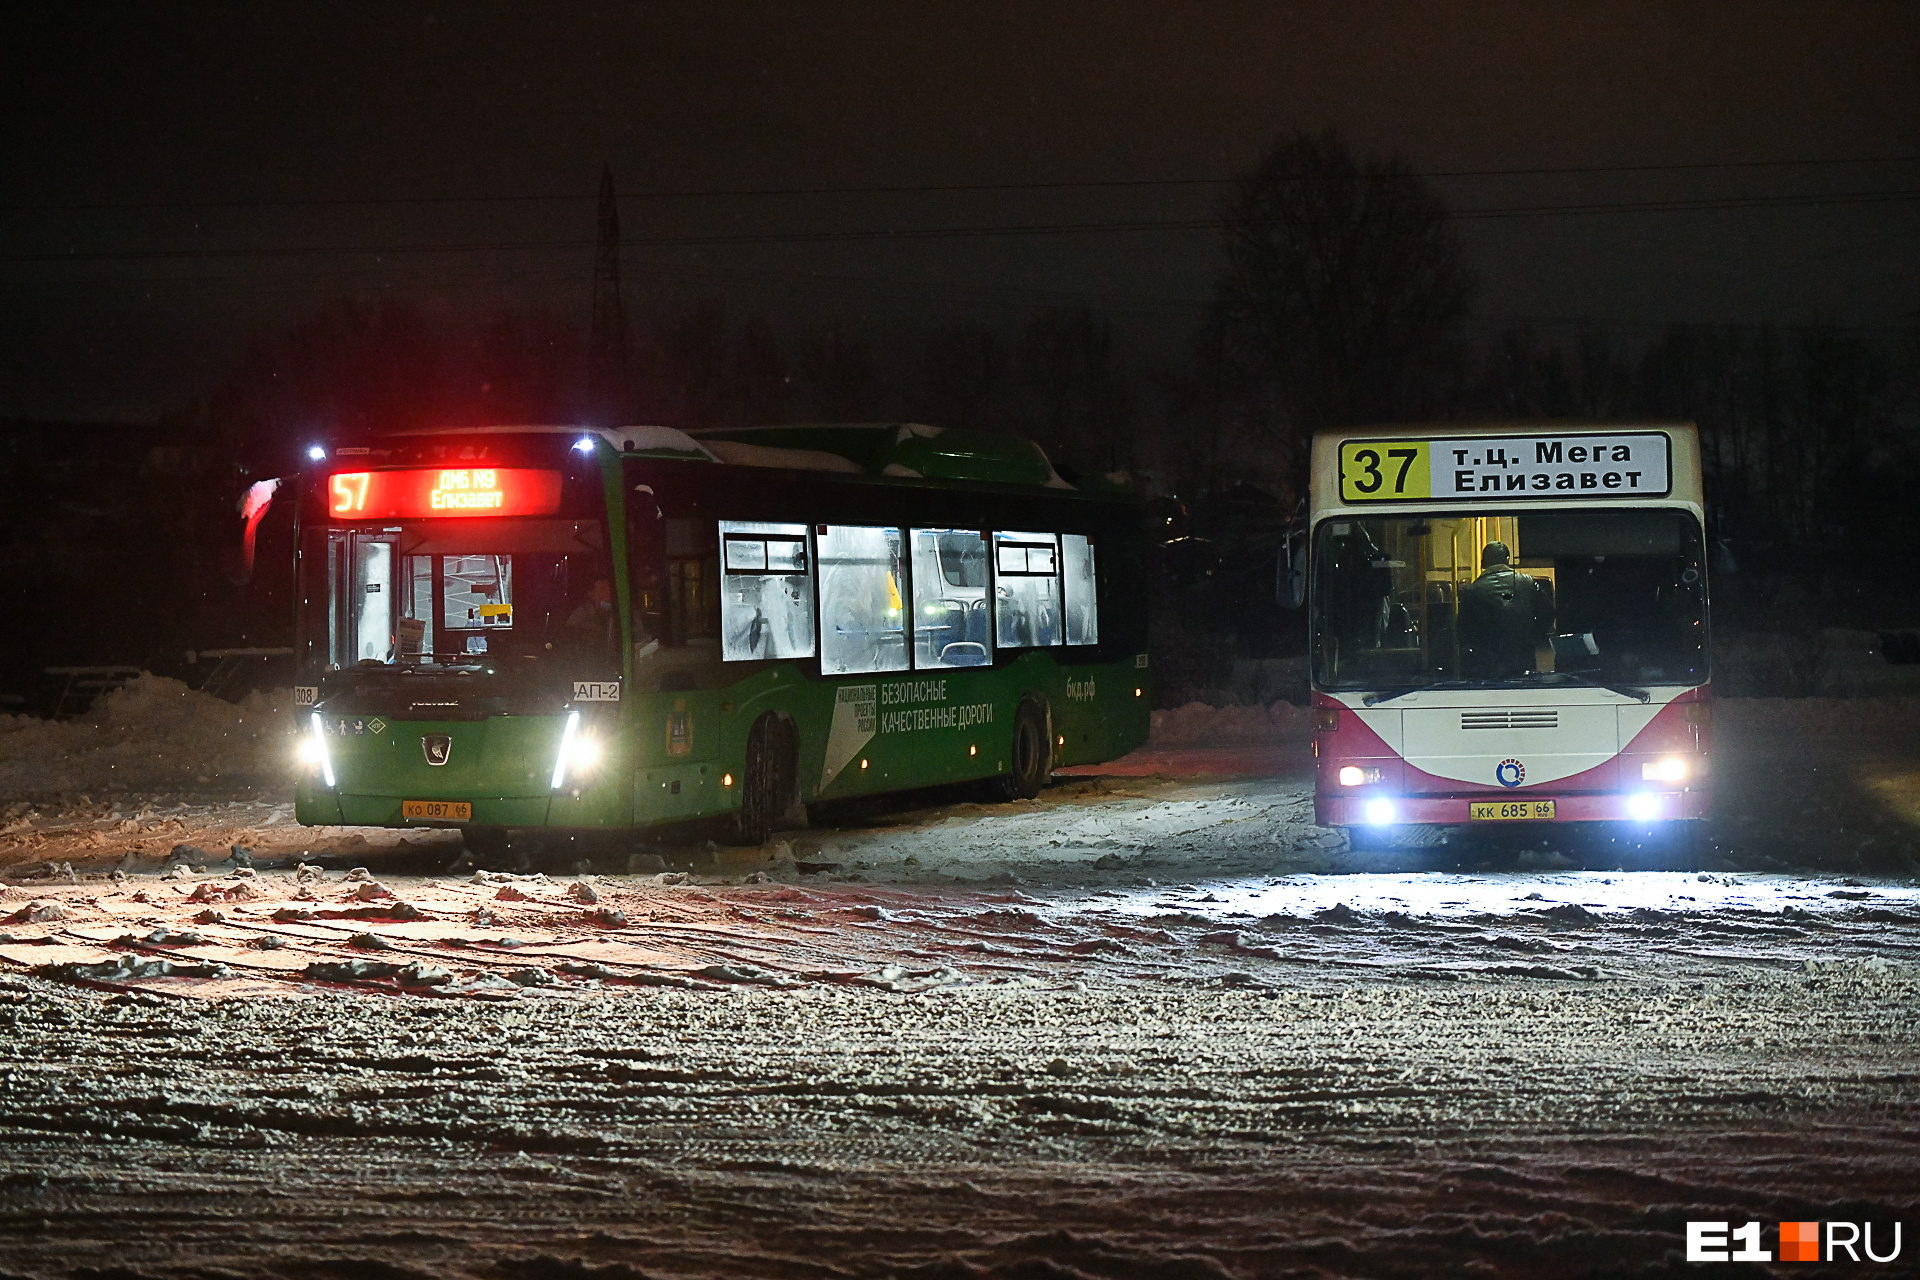 У главного перевозчика Екатеринбурга арестовали счета. Автобусы рискуют остаться без топлива